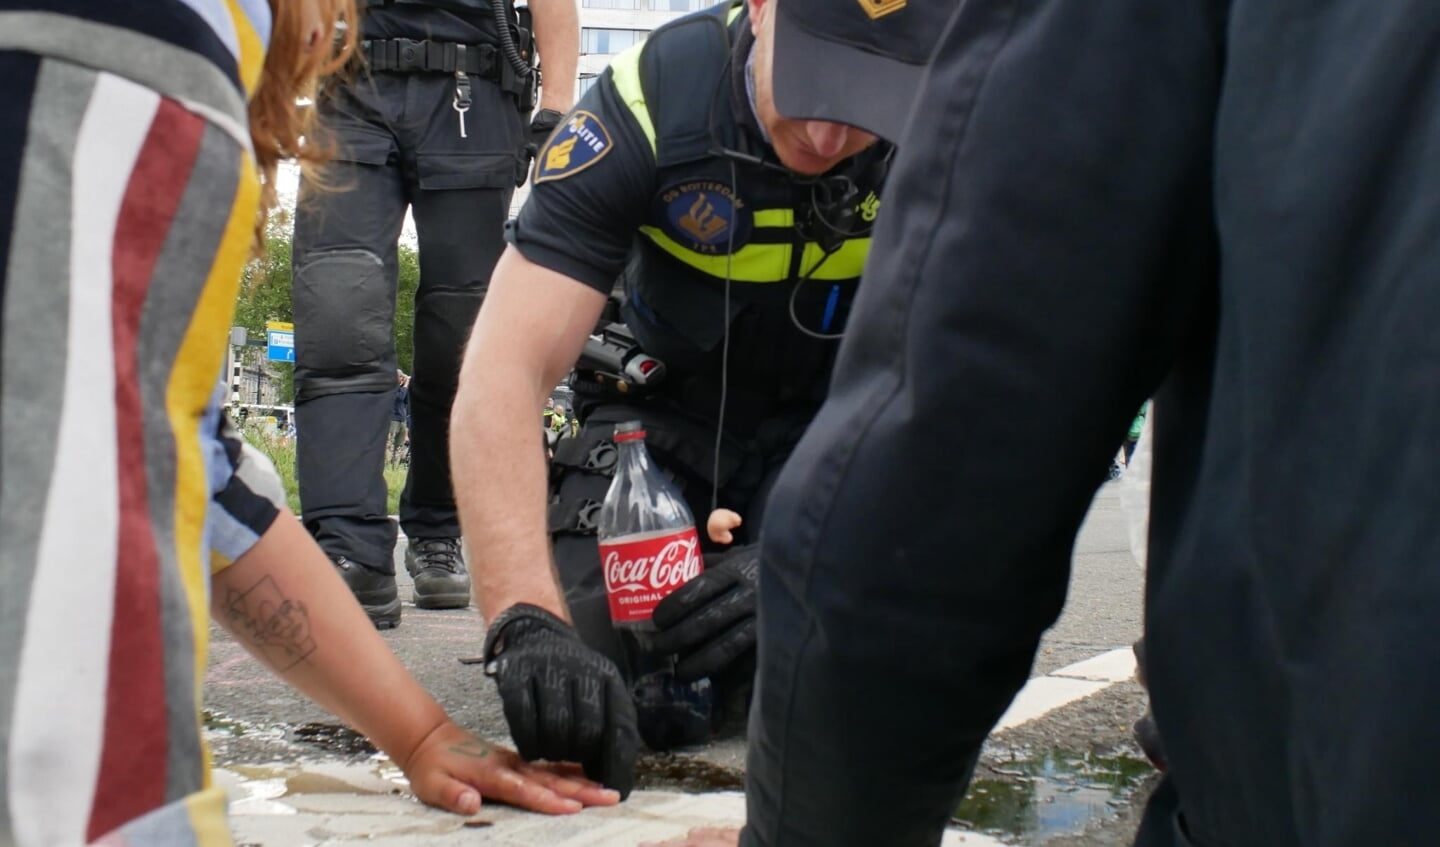 De politie gebruikt onder andere Cola om de actievoerders los te krijgen. Foto's: twitter